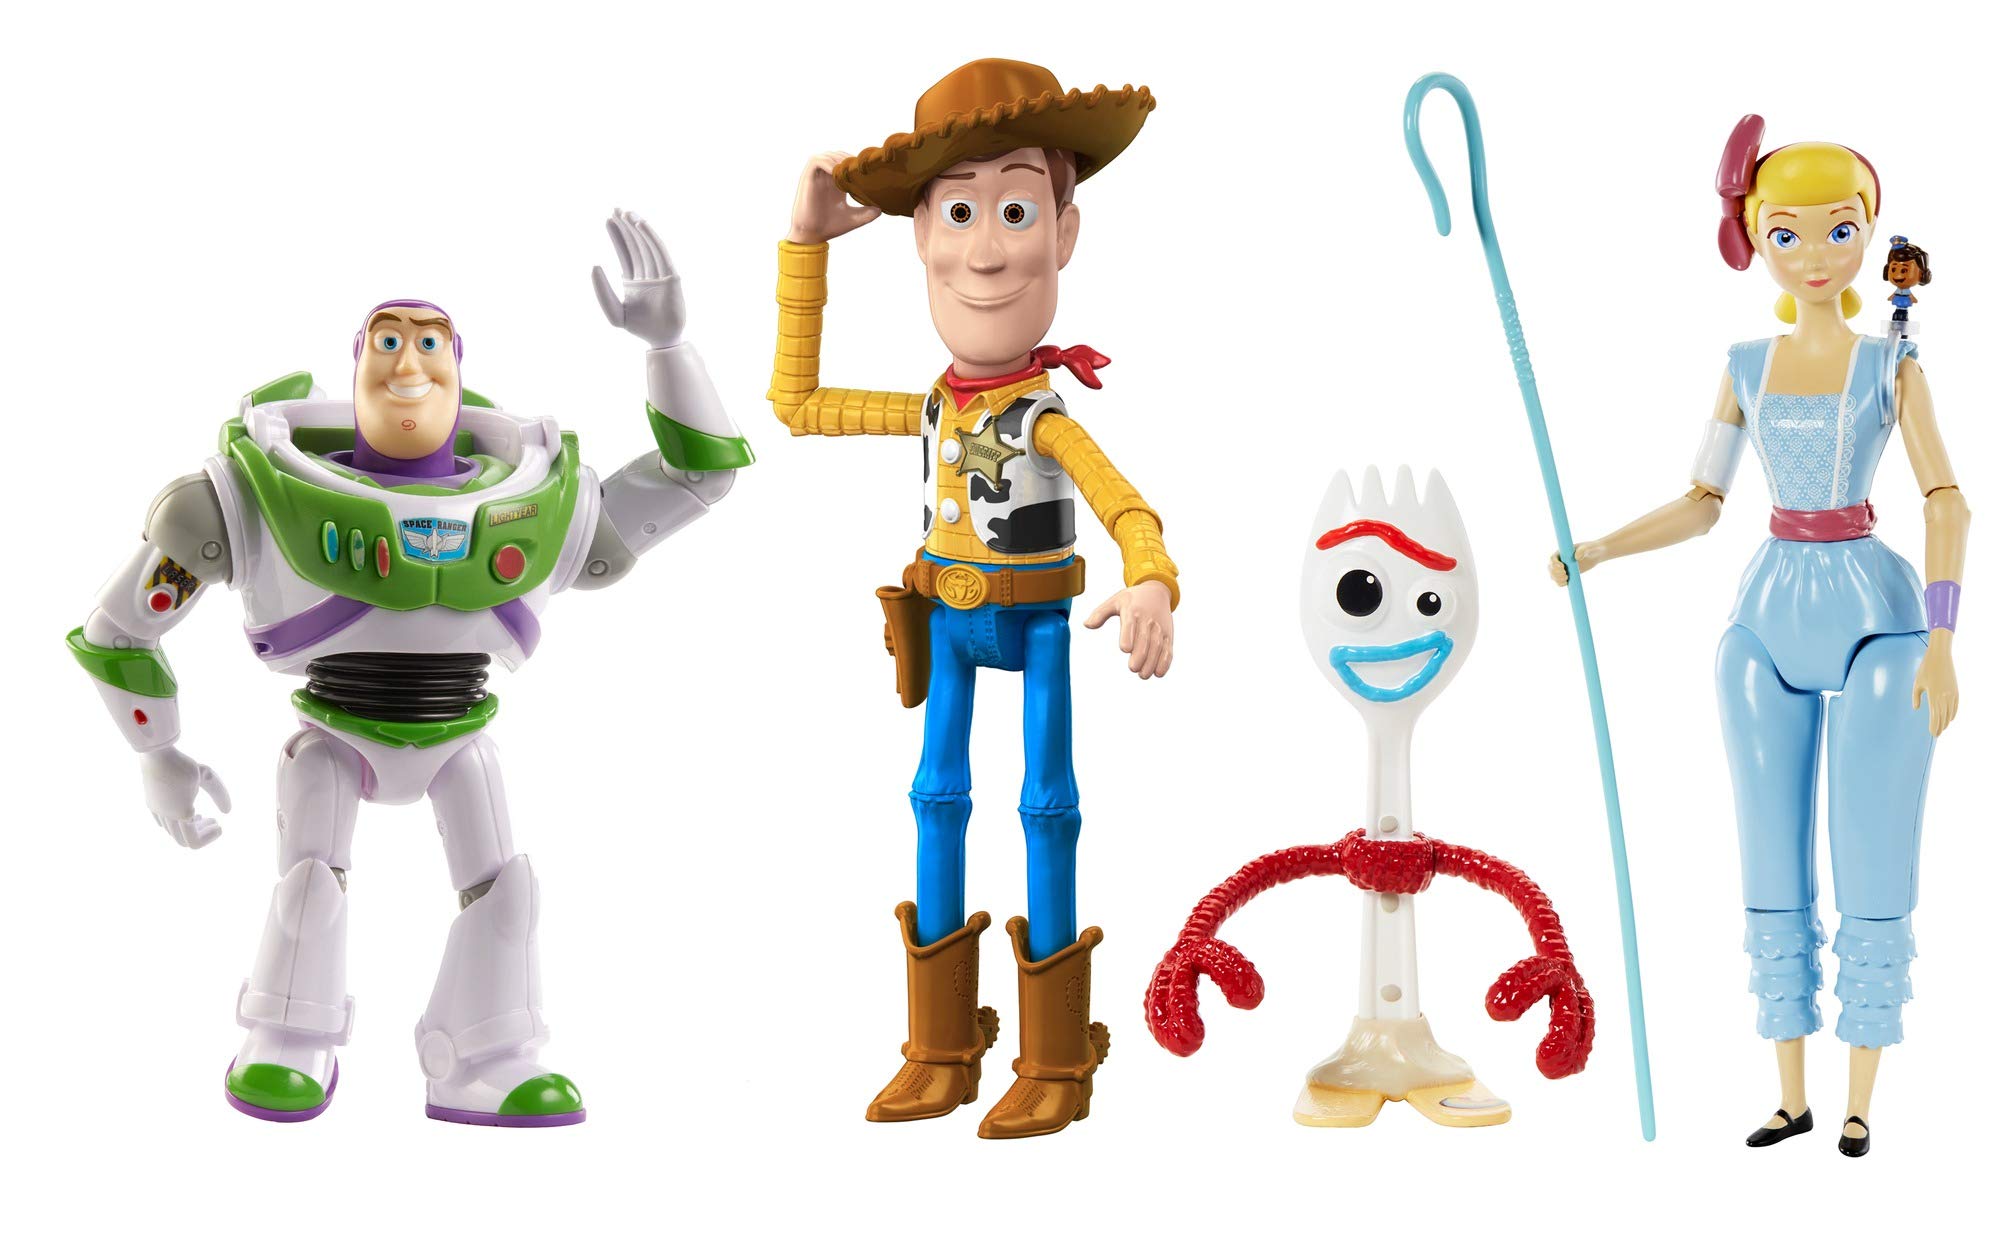 Disney Pixar Toy Story Adventure Pack